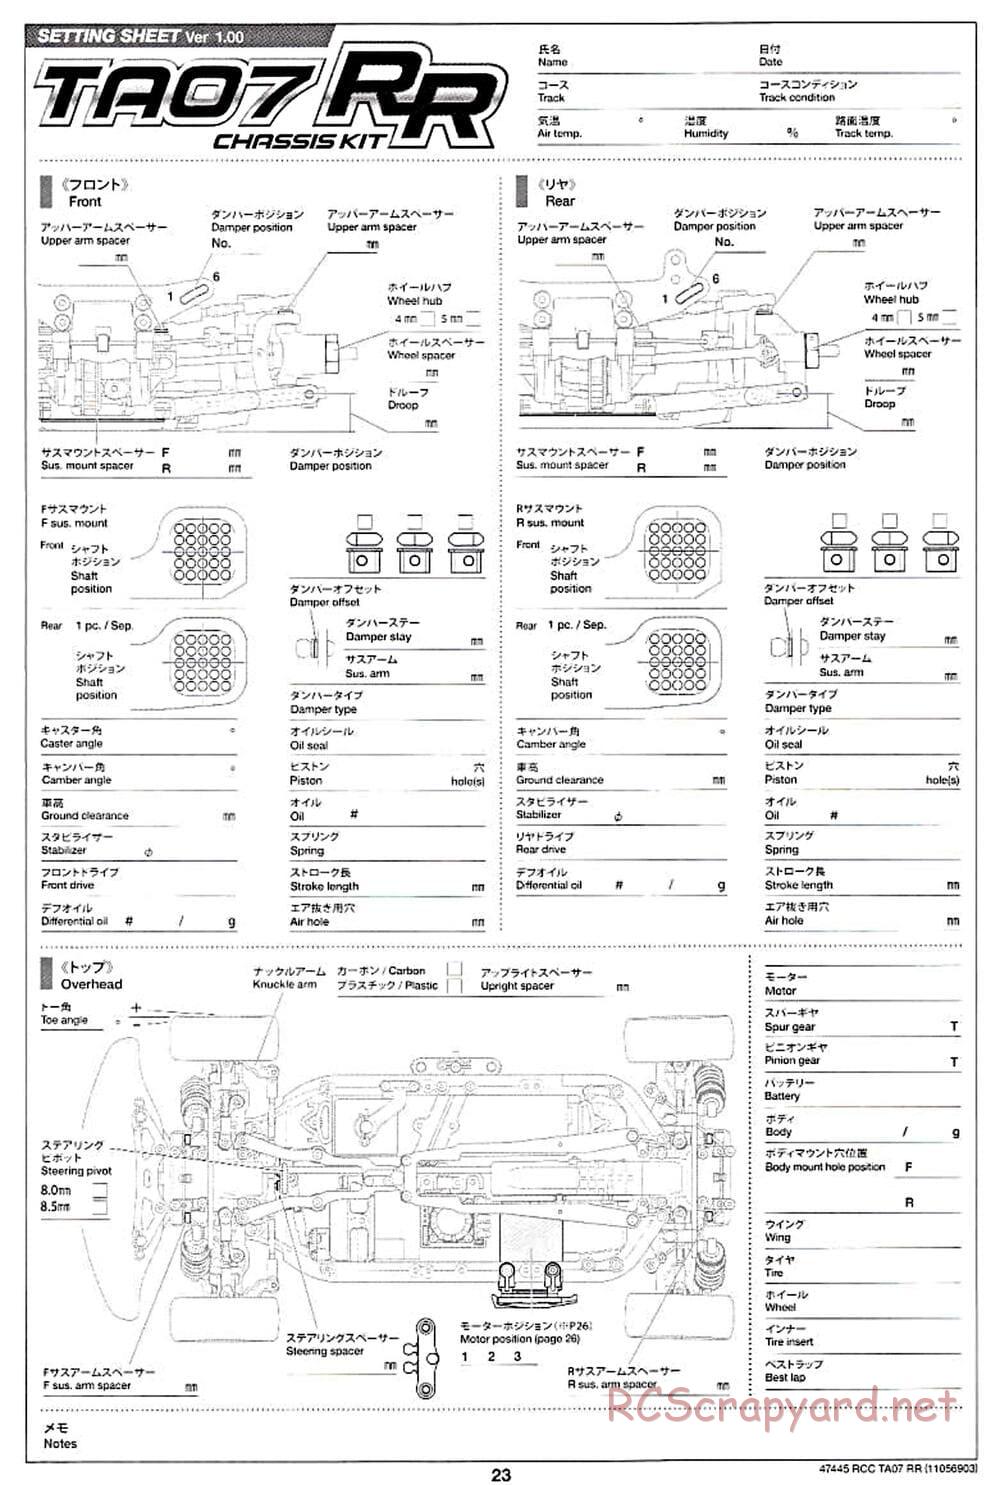 Tamiya - TA07 RR Chassis - Manual - Page 23